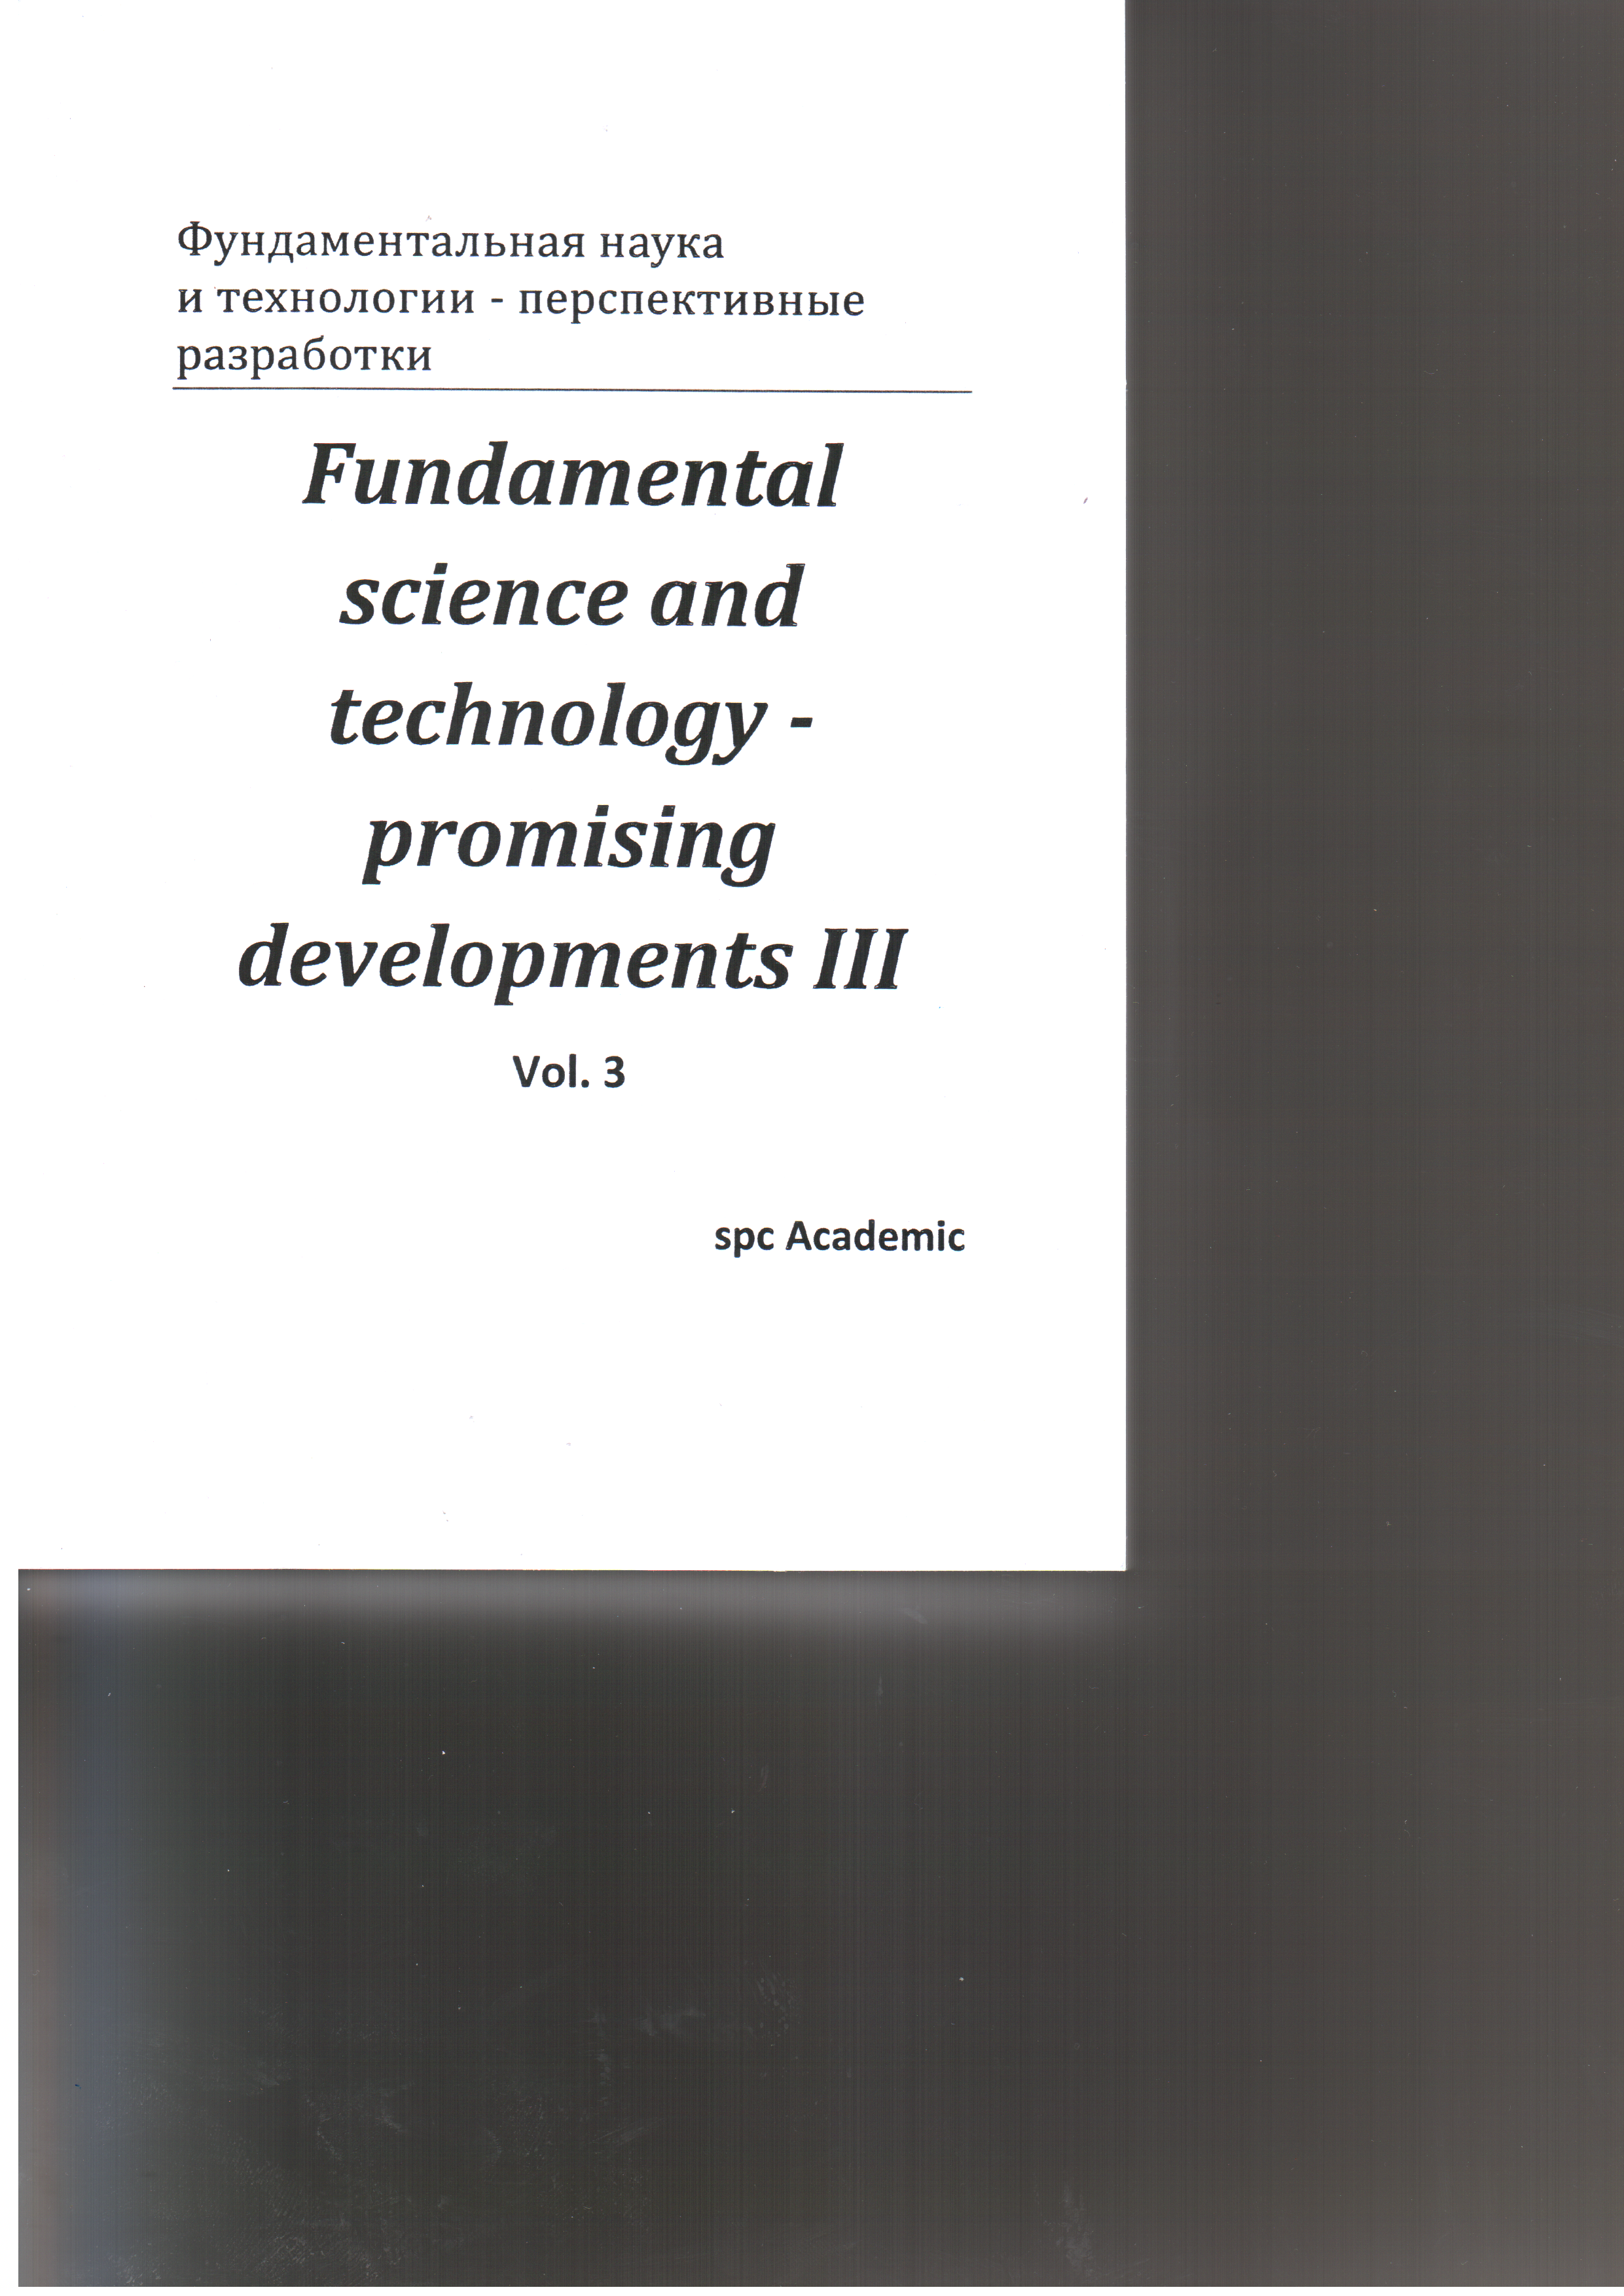 Фундоментальная наука и технология - перспективные разработки/ Fundamental science and technology - promising developments III